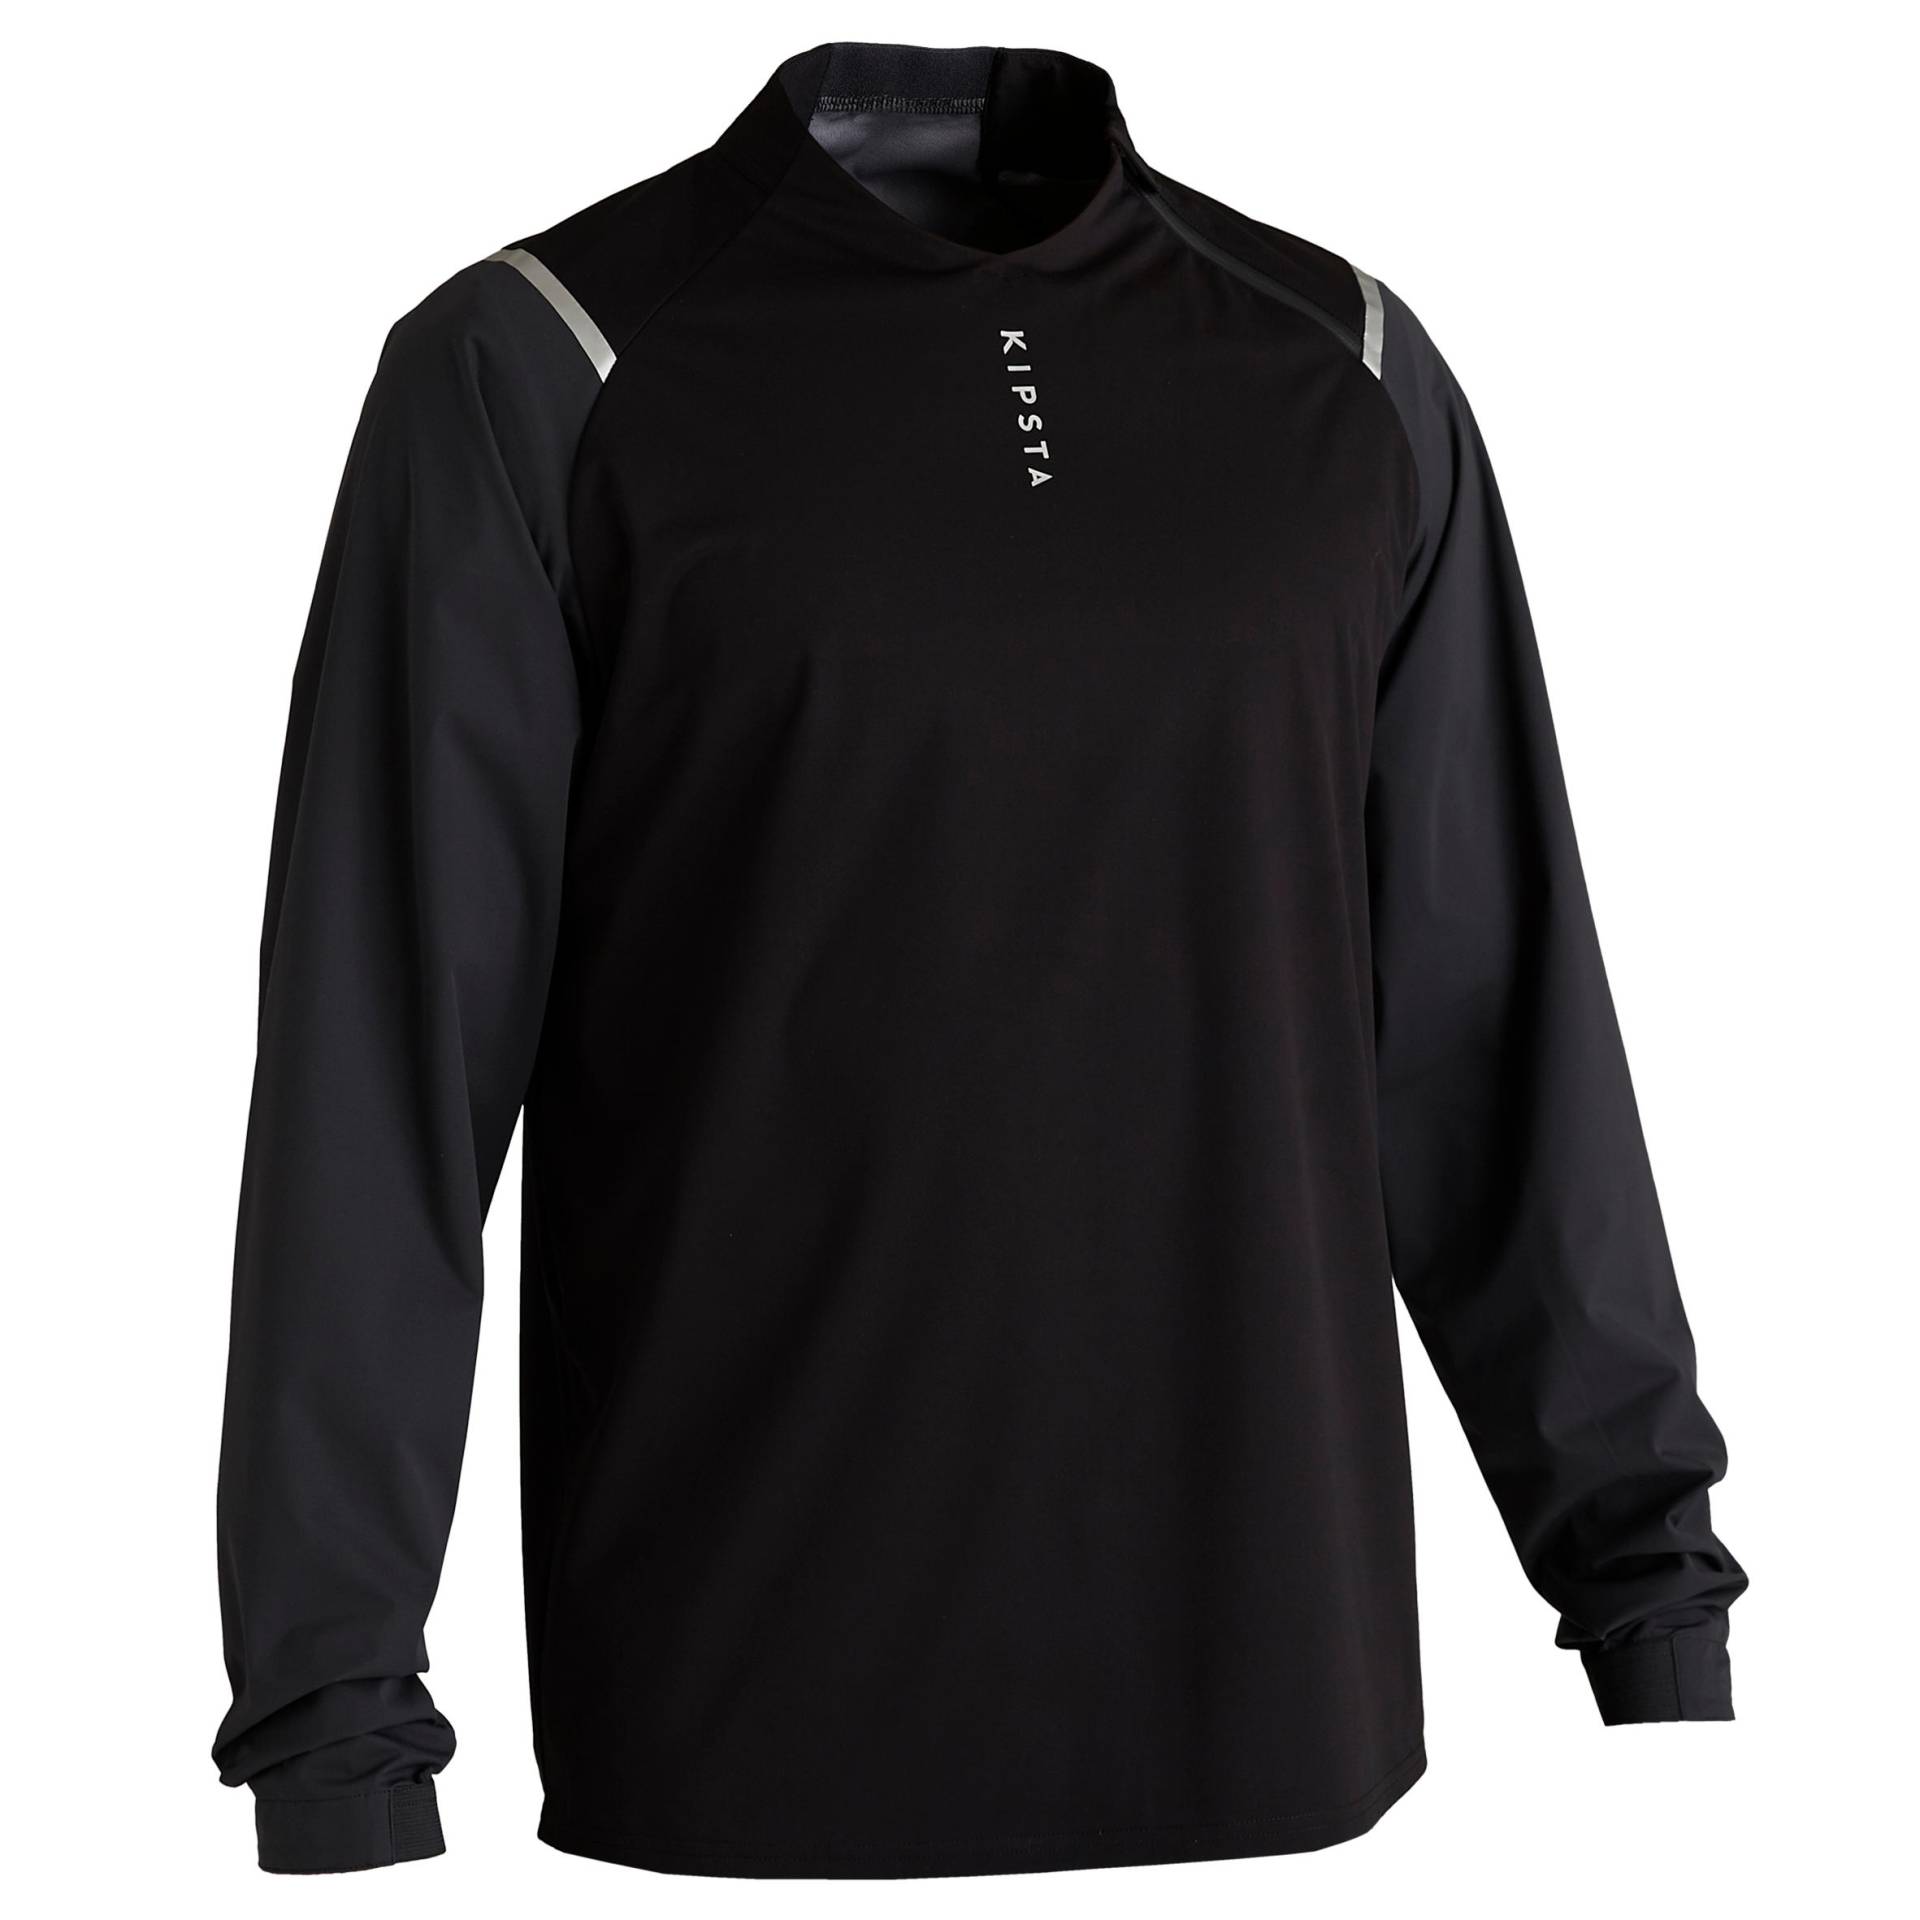 Damen/Herren Fussball Sweatshirt wasserdicht - T500 schwarz von KIPSTA